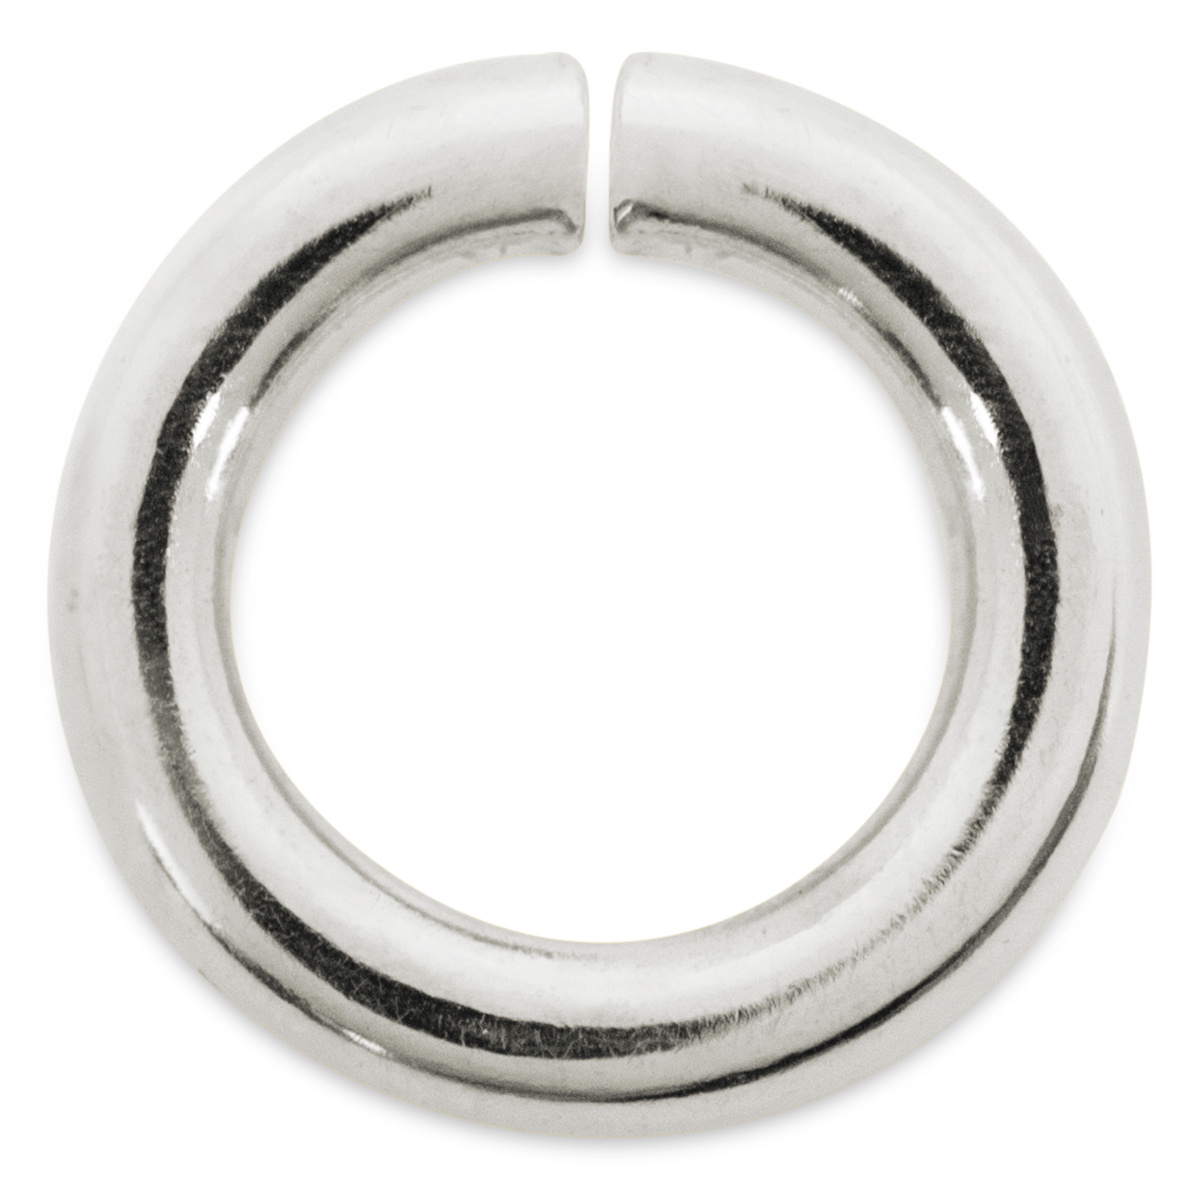 Binderinge, rund, 925/- Silber, Ø 6 mm, Stärke 1,2 mm